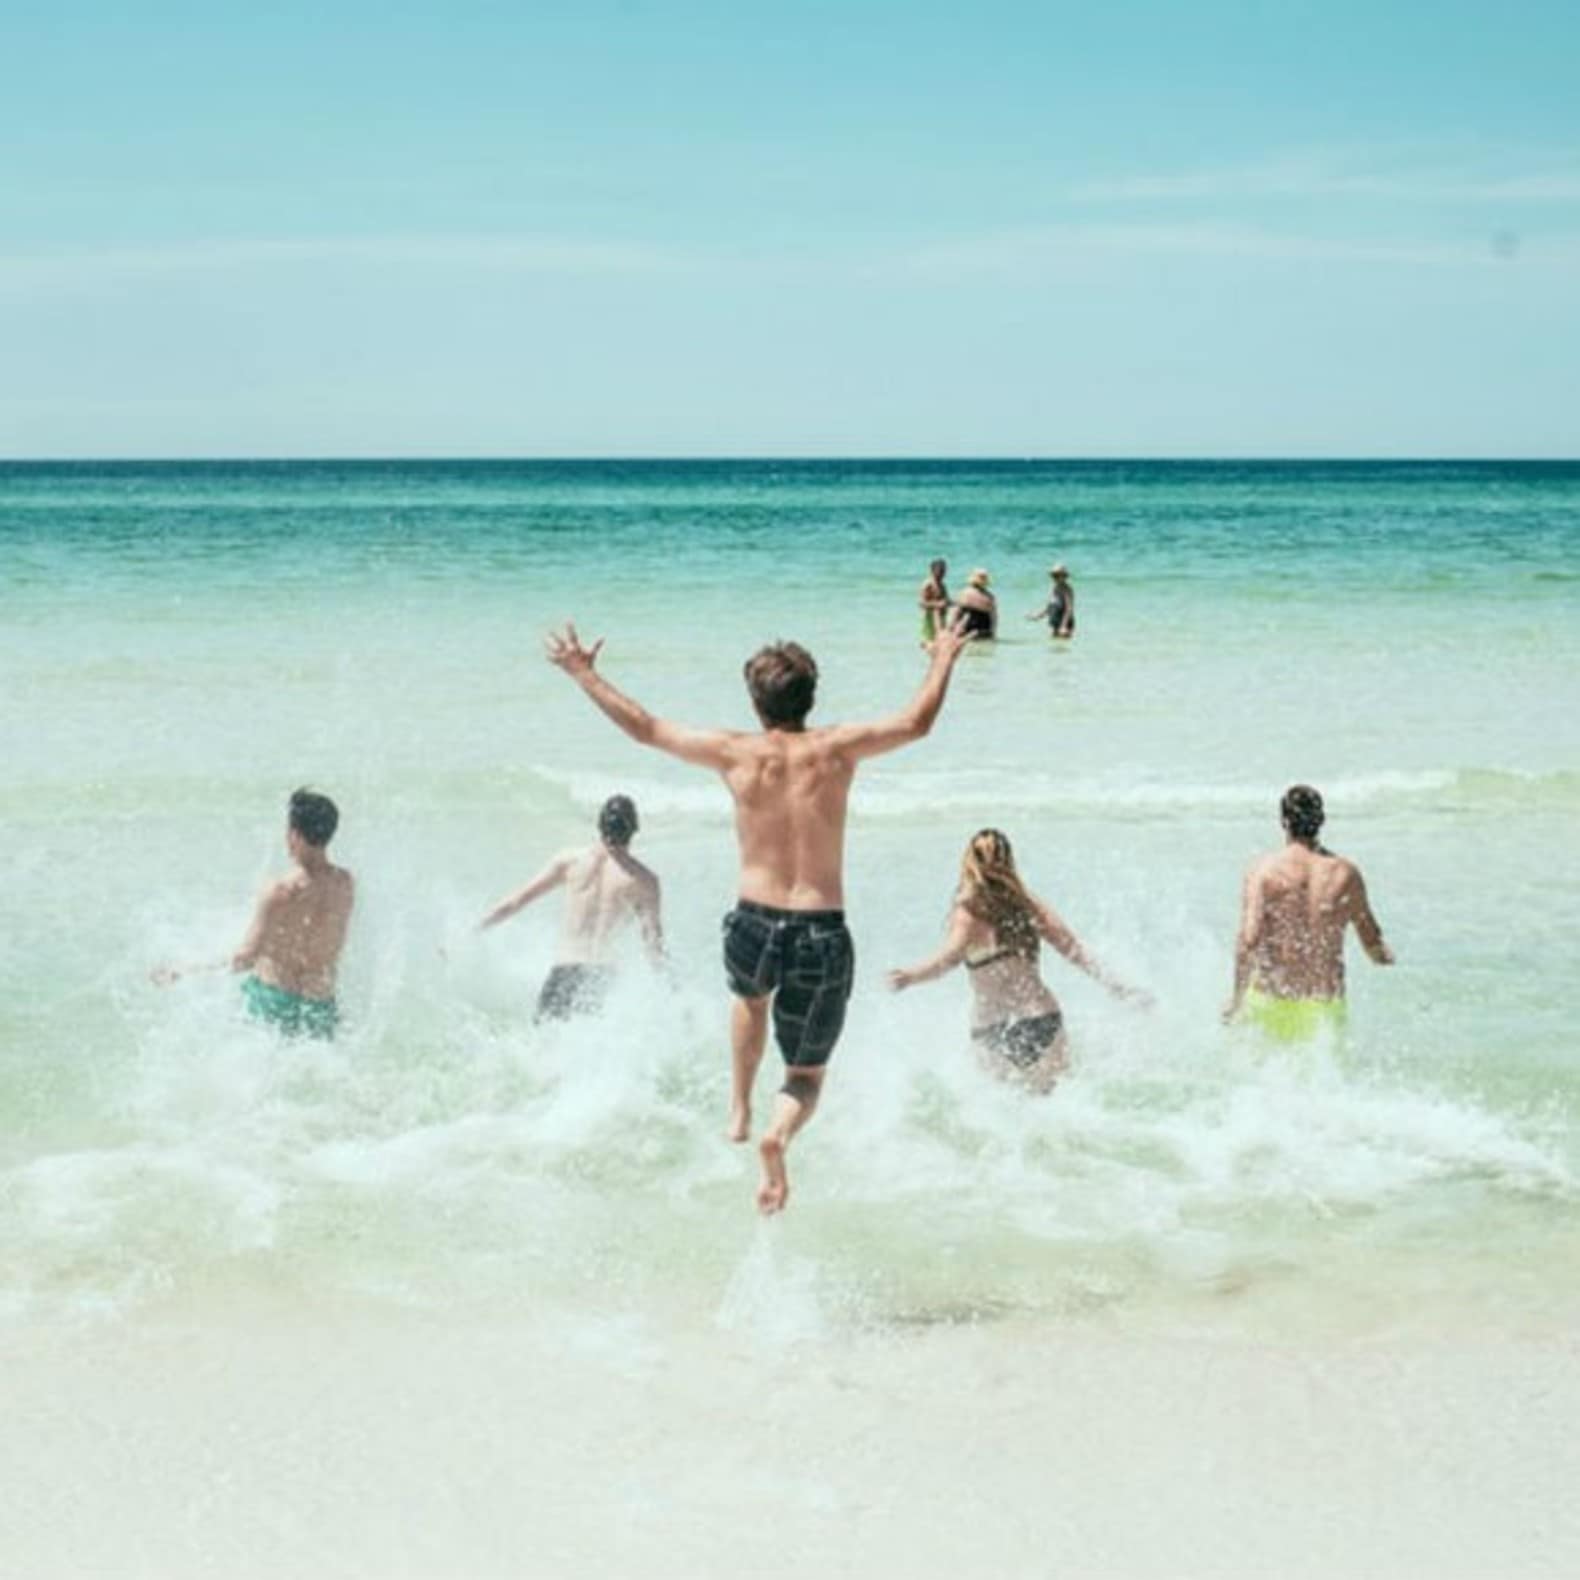 Groupe de personnes courant dans l’eau sur la plage, vacances en famille